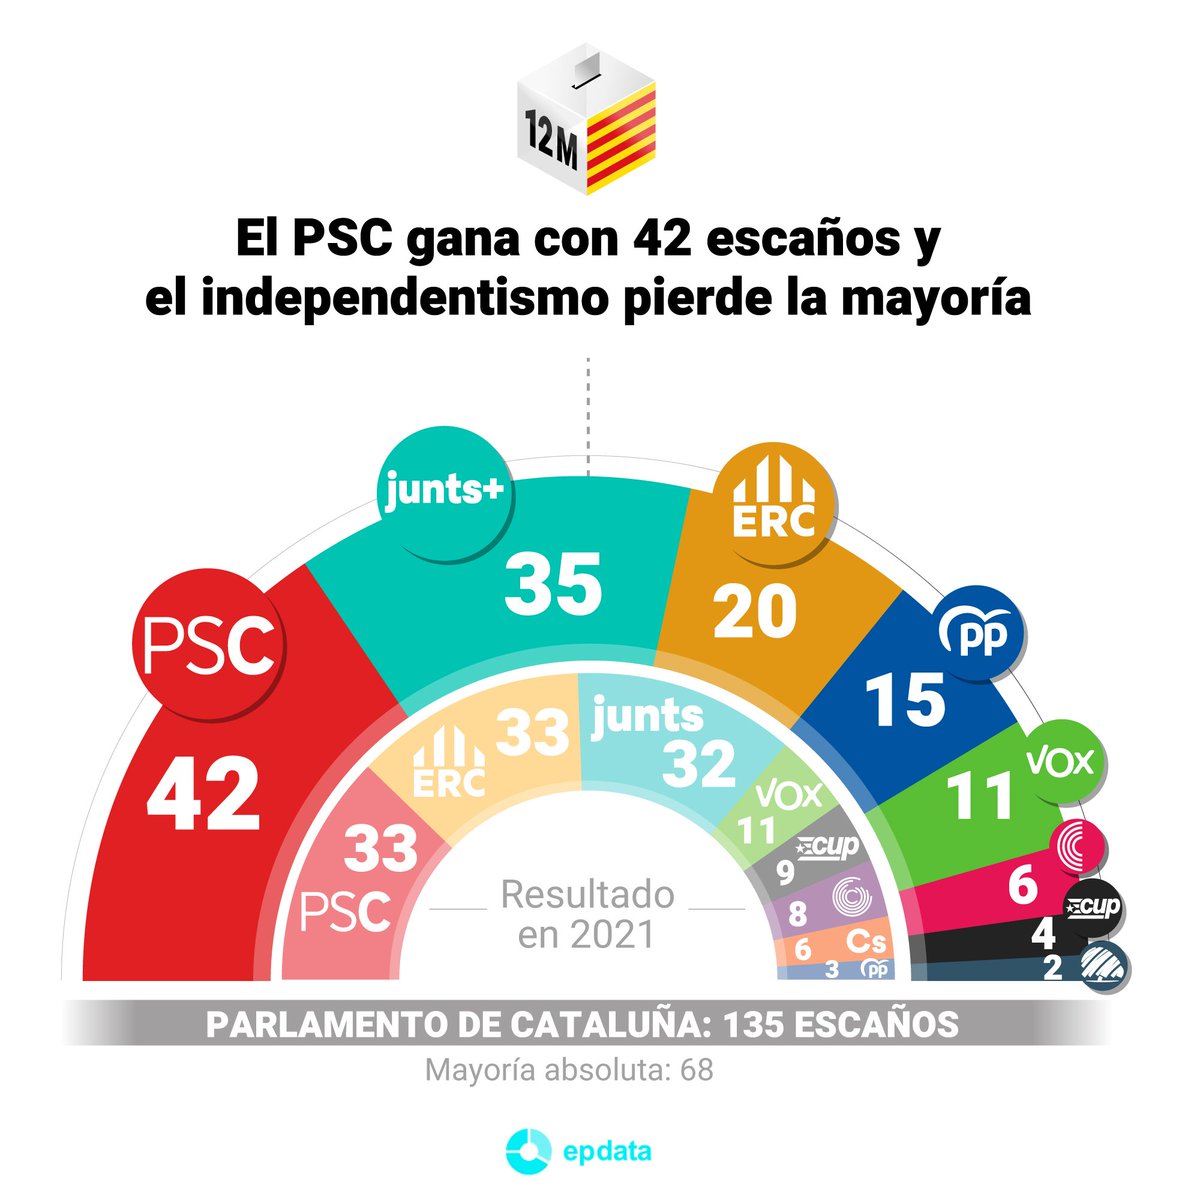 “Los independentistas no consiguen sumar mayoría por primera vez desde 1980 y el PSC gana por primera vez en escaños y votos y entierra el ‘procés”. Pepa Bueno

El apocalipsis pronosticado por la derecha se da de bruces con la realidad. Enhorabuena a #SalvadorIlla y #PedroSánchez